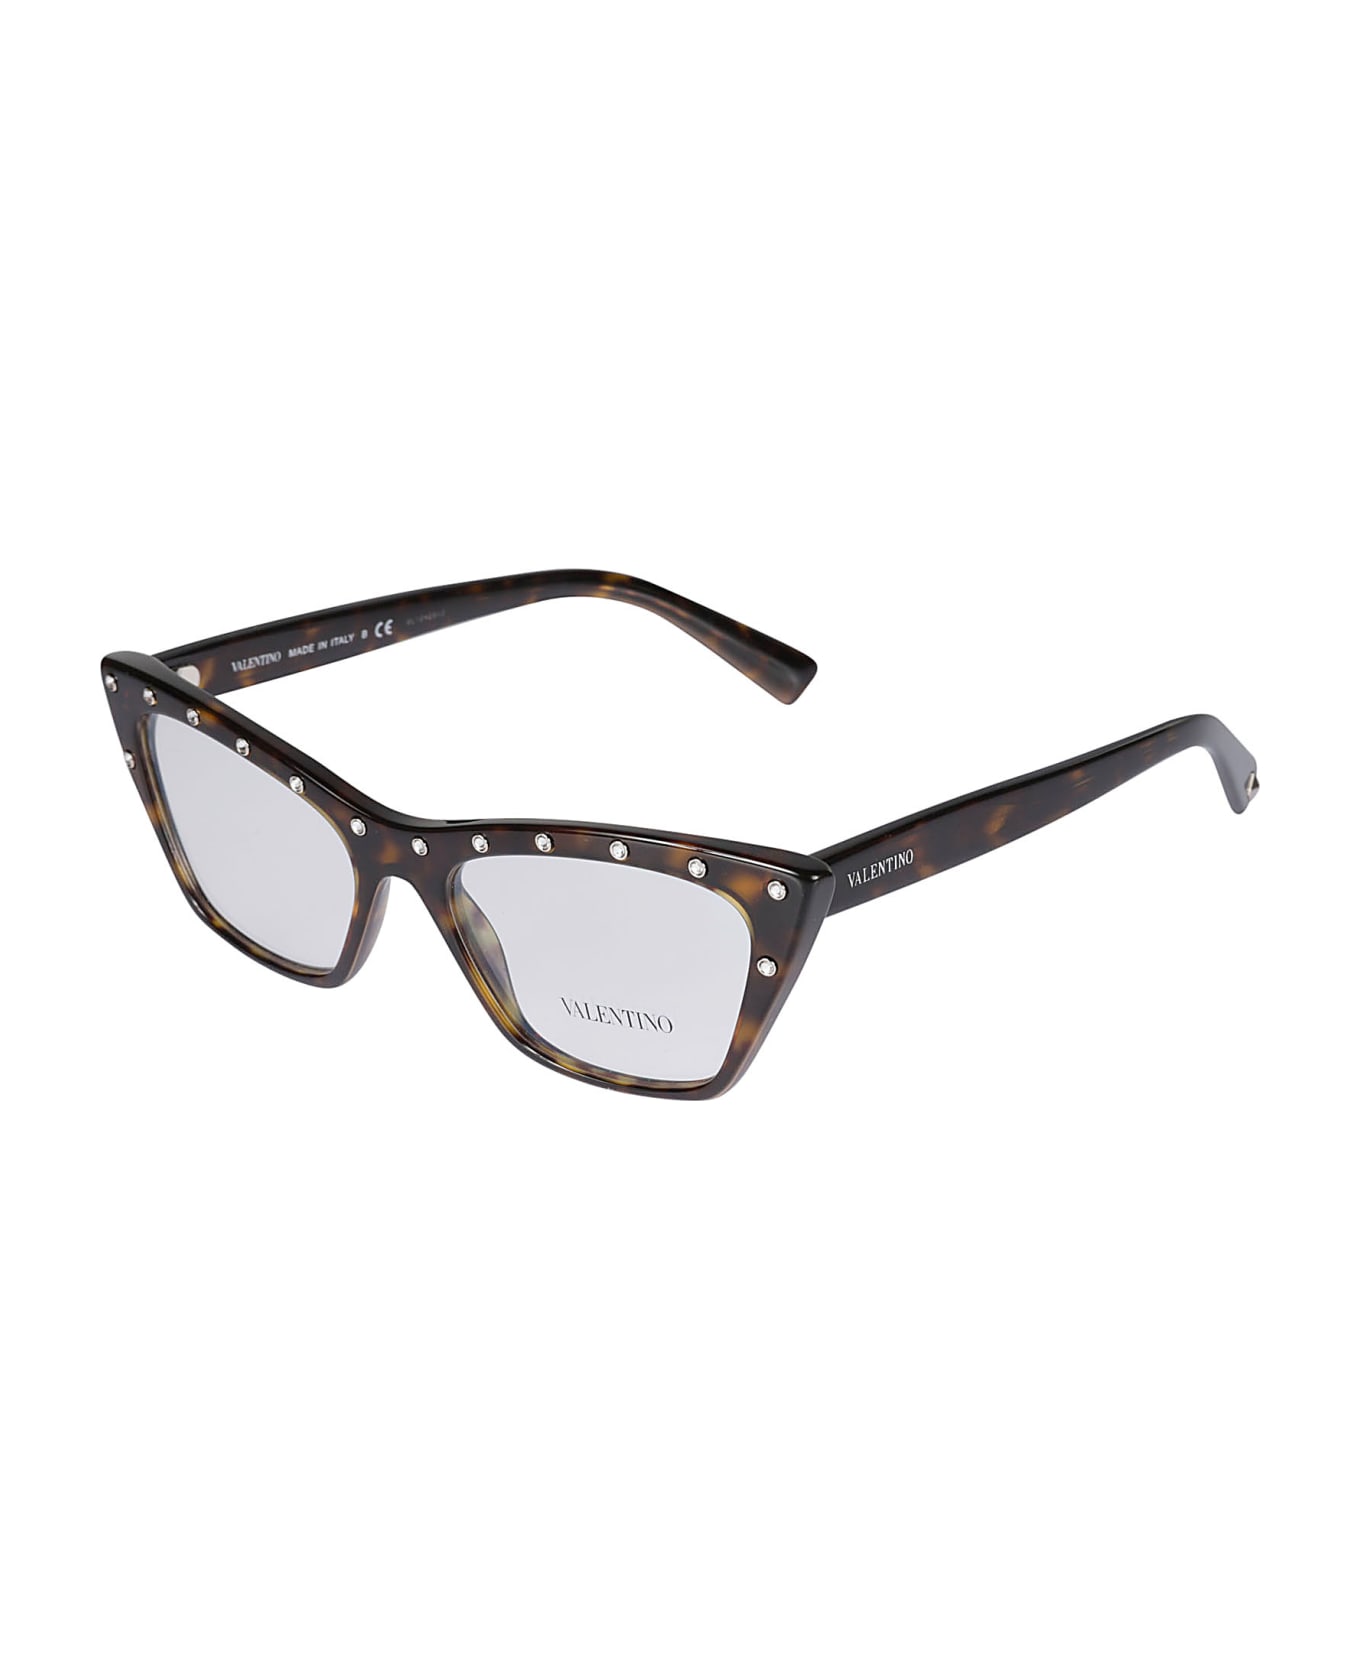 Valentino Eyewear Vista5002 Glasses - 5002